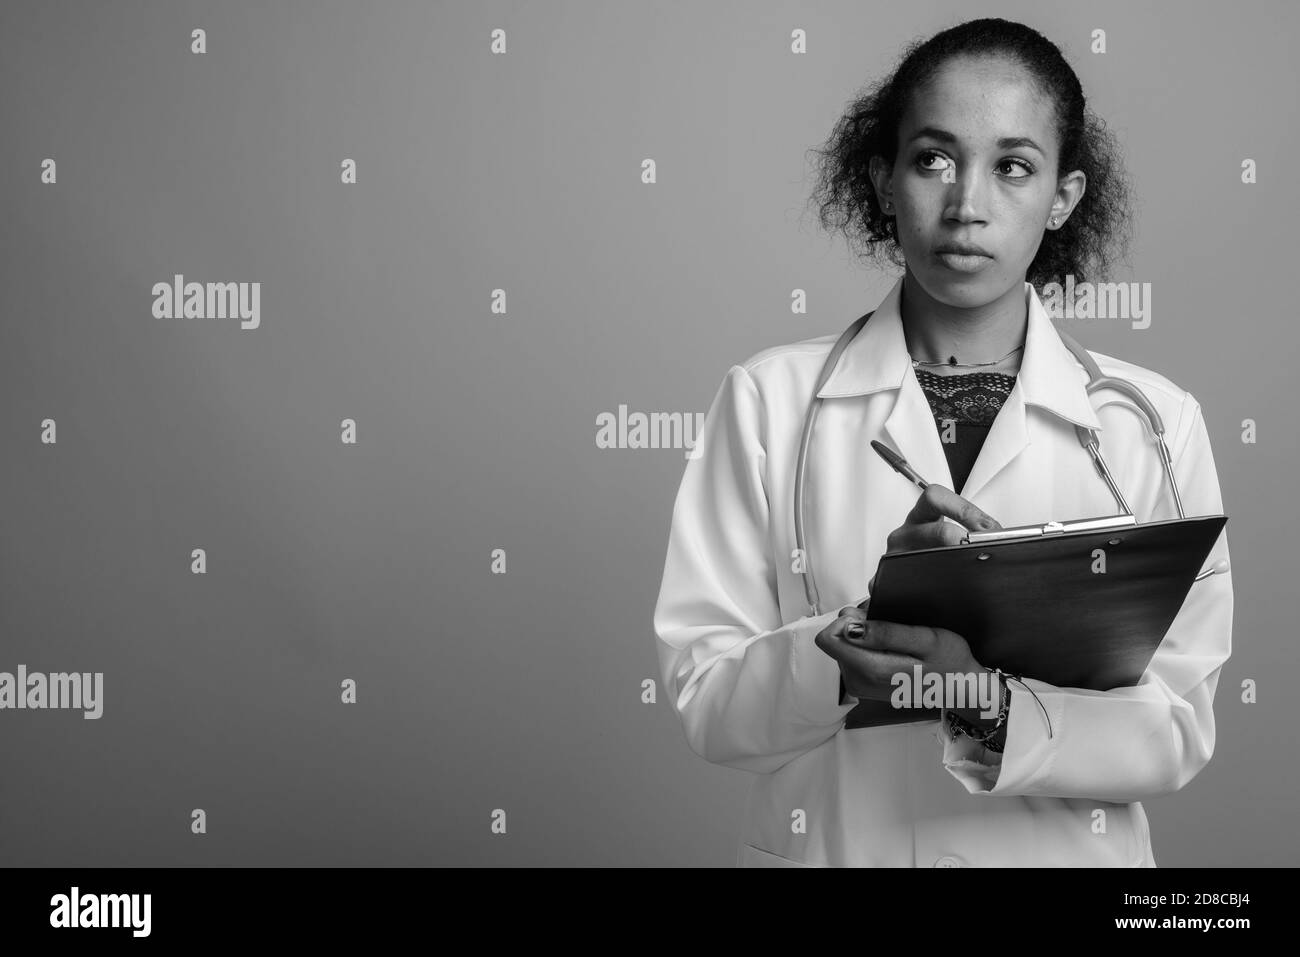 Belle jeune femme africaine médecin contre l'arrière-plan gris Banque D'Images